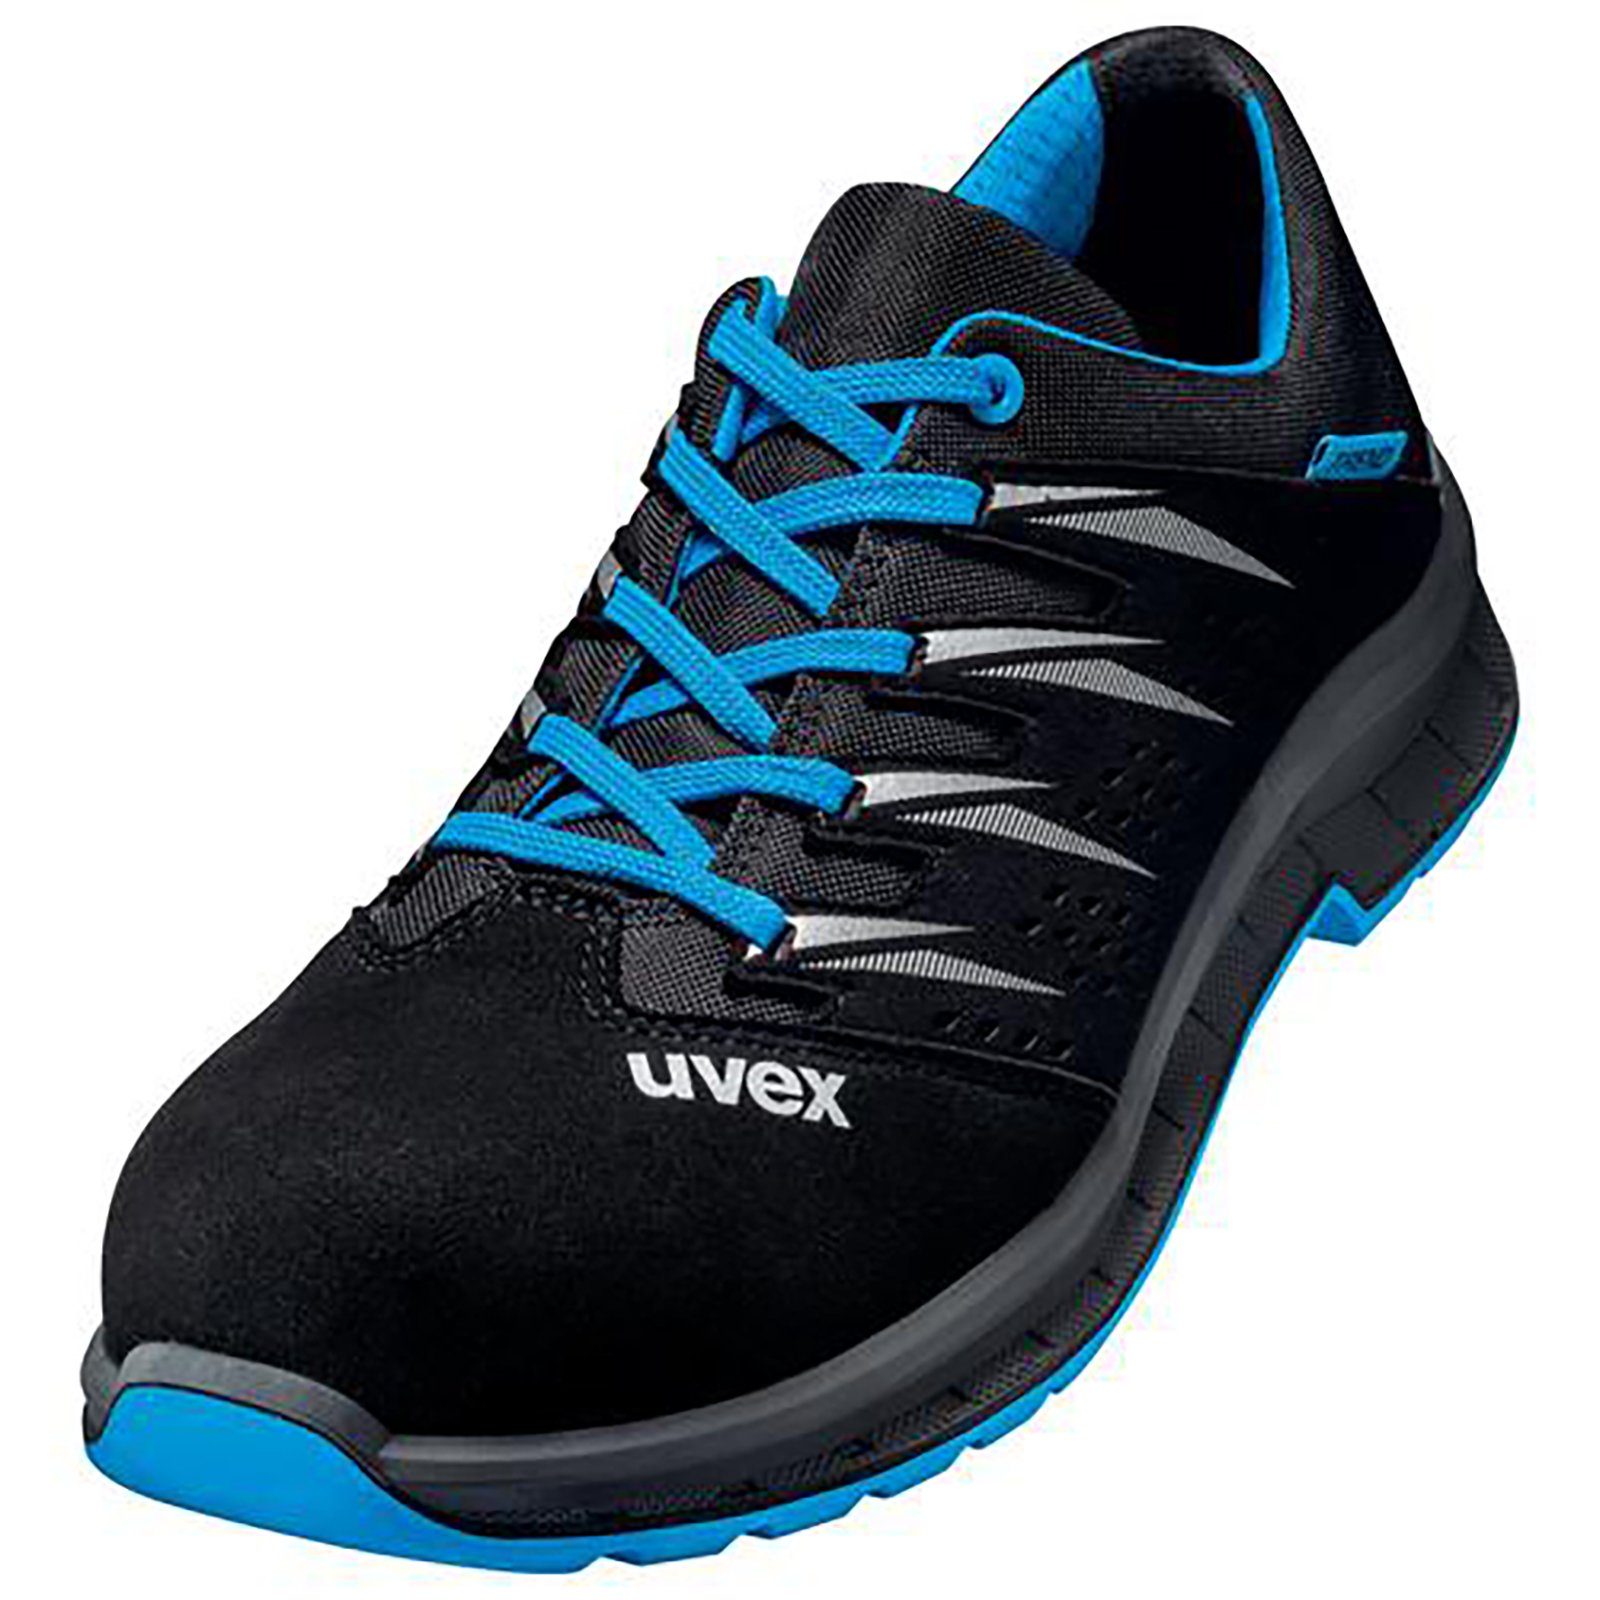 Uvex 2 trend Halbschuhe S1 blau, schwarz Weite 10 Sicherheitsschuh